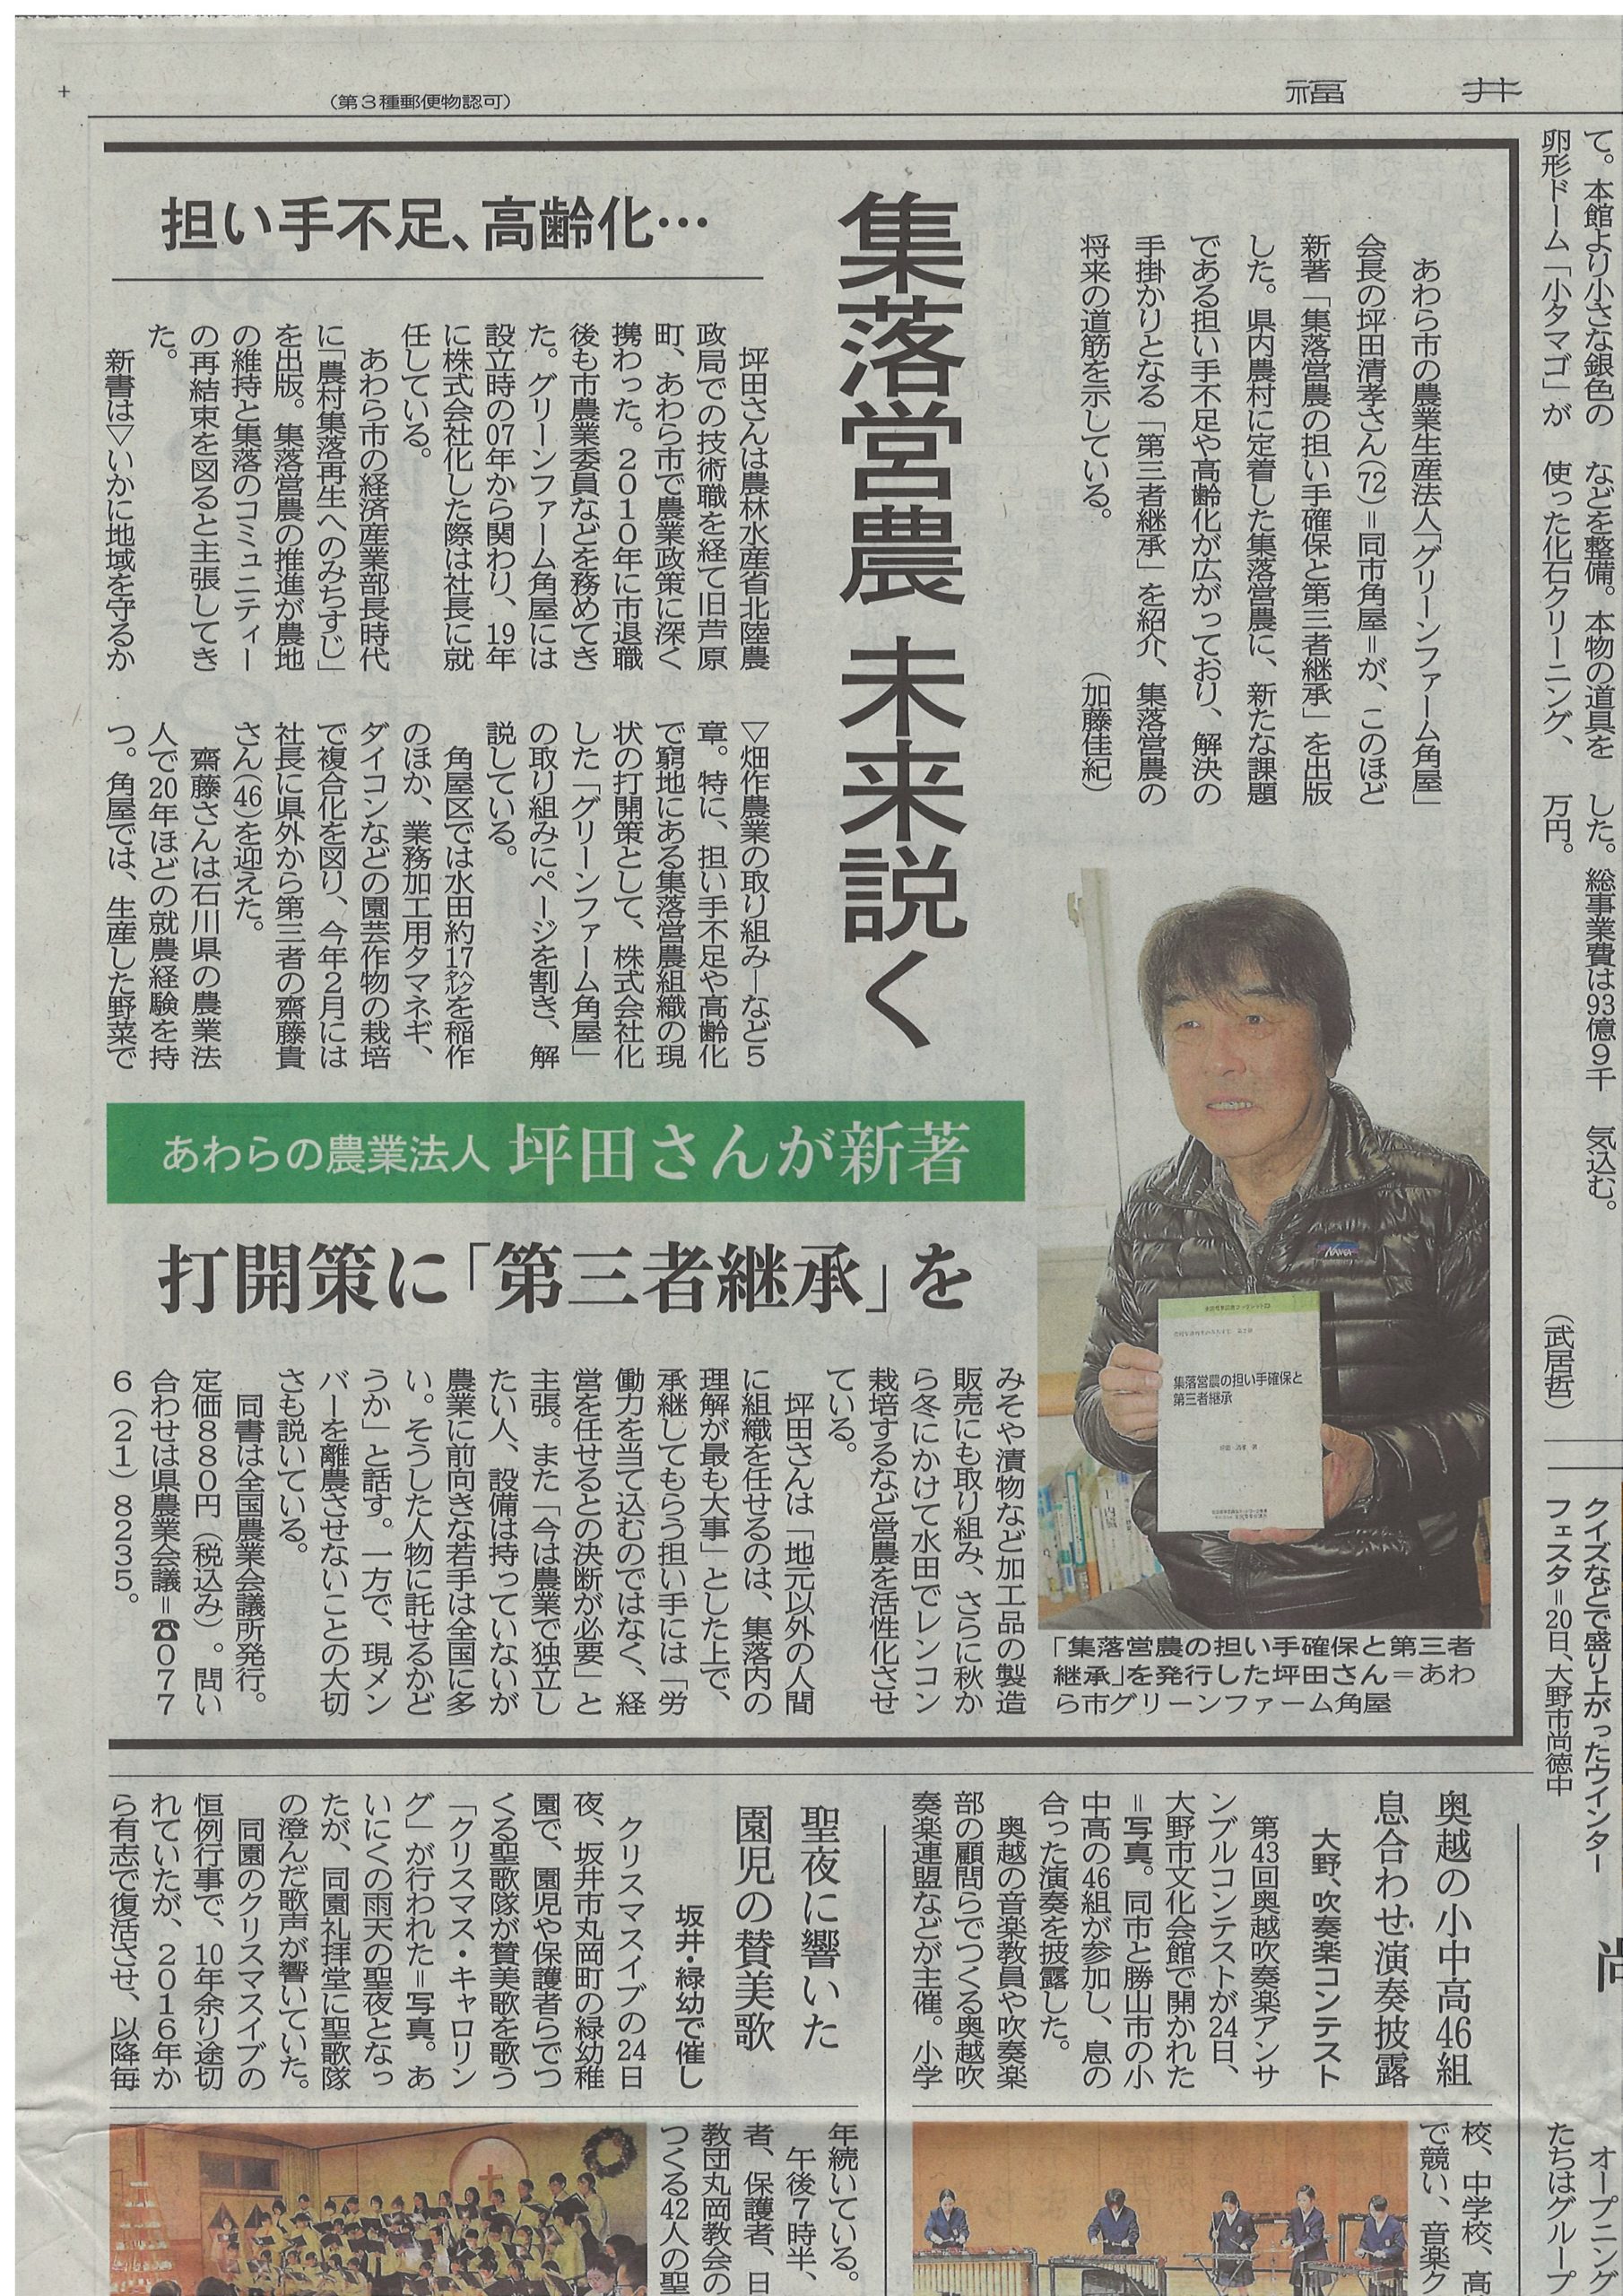 第三者承継について福井新聞で記事にしていただきました。